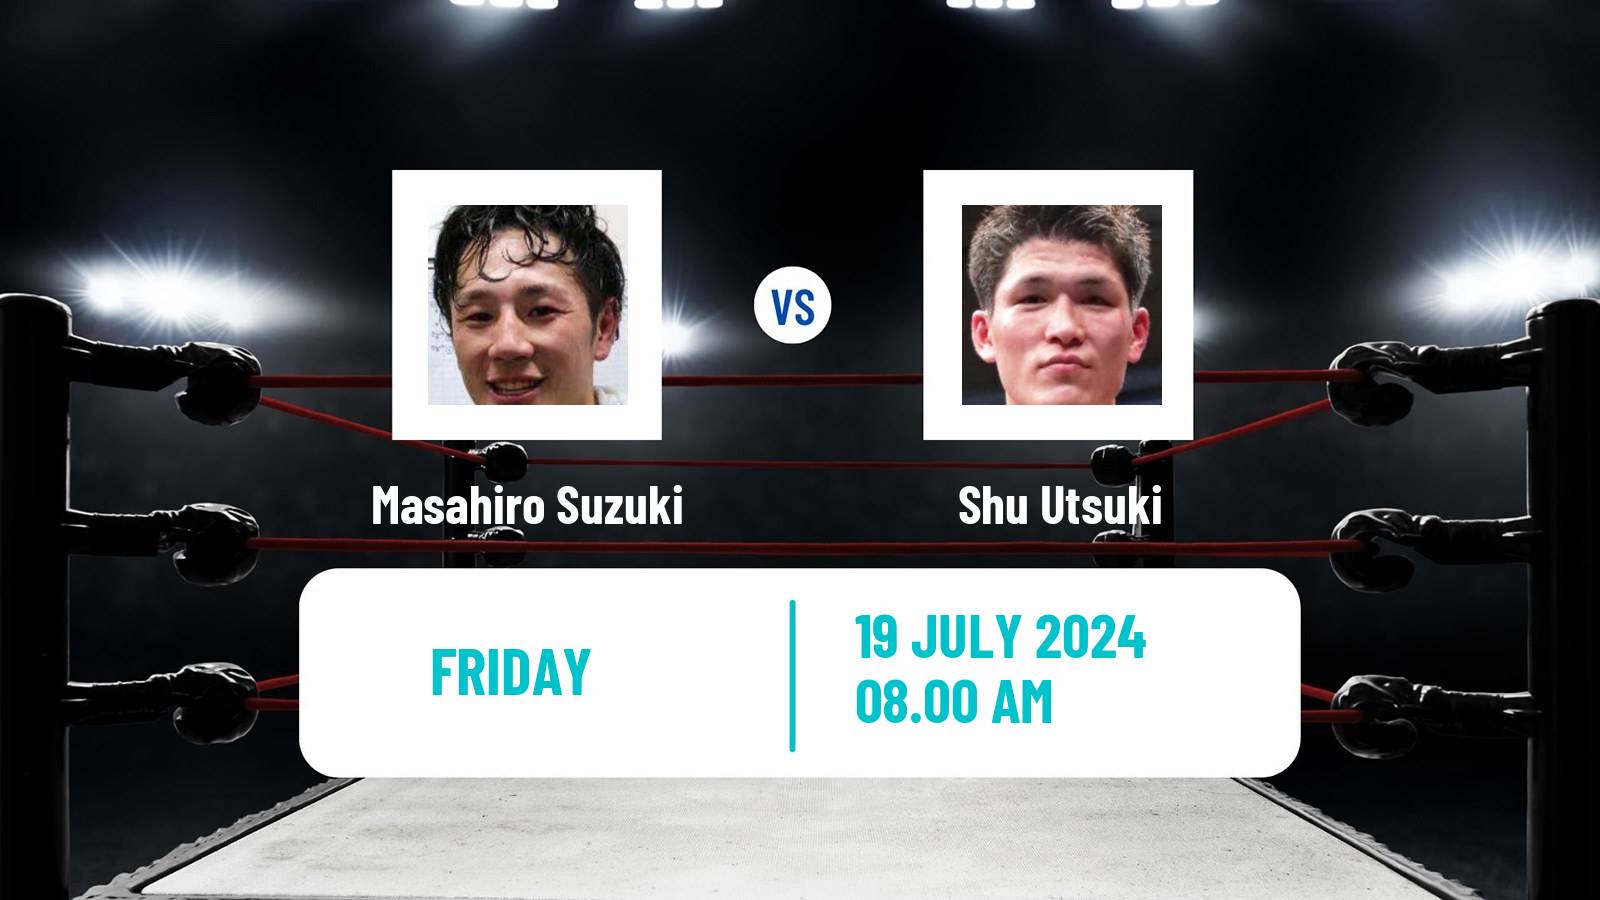 Boxing Lightweight Opbf Title Men Masahiro Suzuki - Shu Utsuki